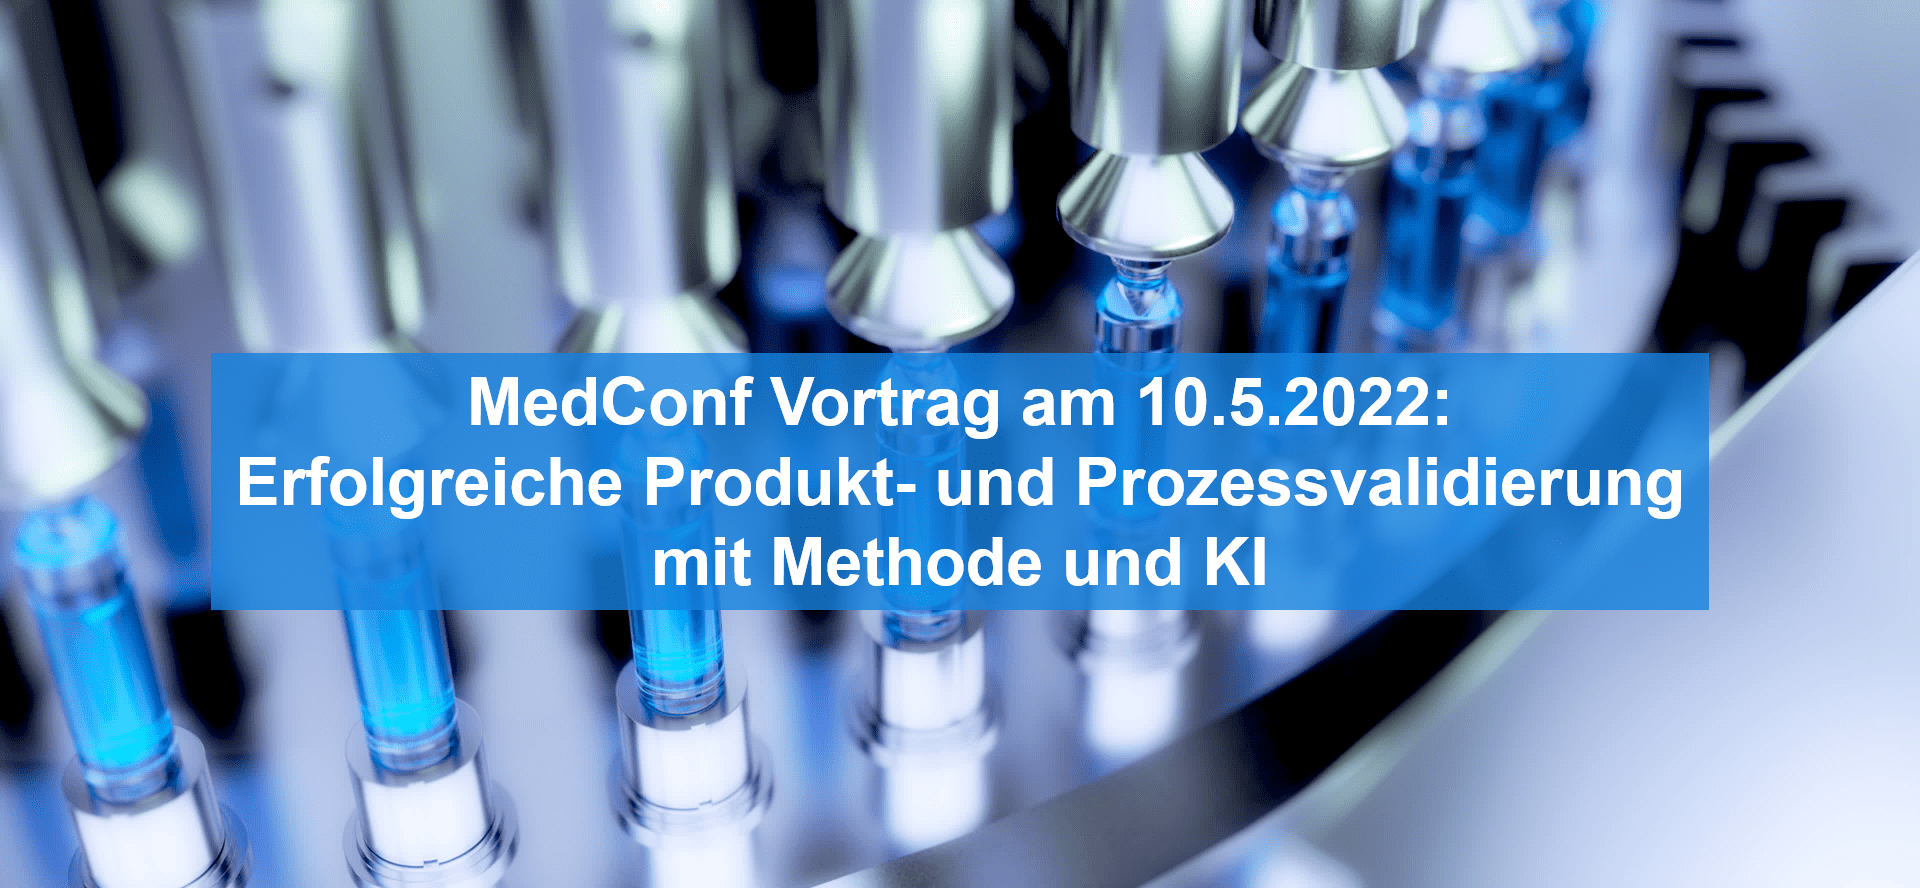 Erfolgreiche Produkt- und Prozess-Validierung in der Medizintechnik – MedConf-Vortrag inklusive Praxisbeispiel